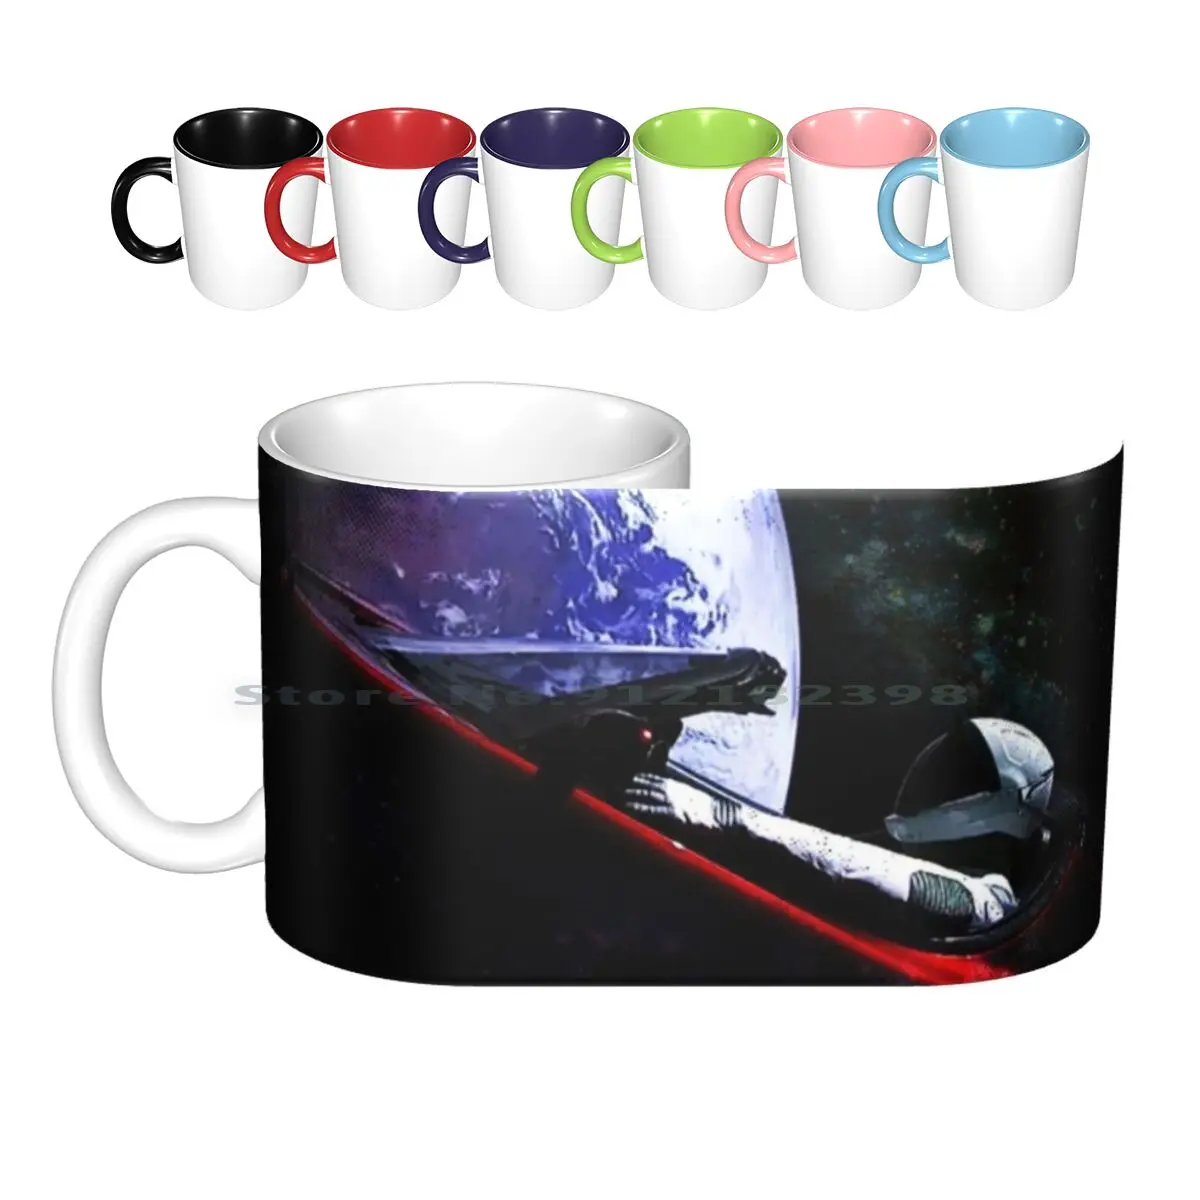 

Керамические кружки с надписью «Road To Ceramic», кофейные чашки, кружка для молока, чая, кружка Spacex Tesla Roadster, астронавт, космос, человек, земля, гала...